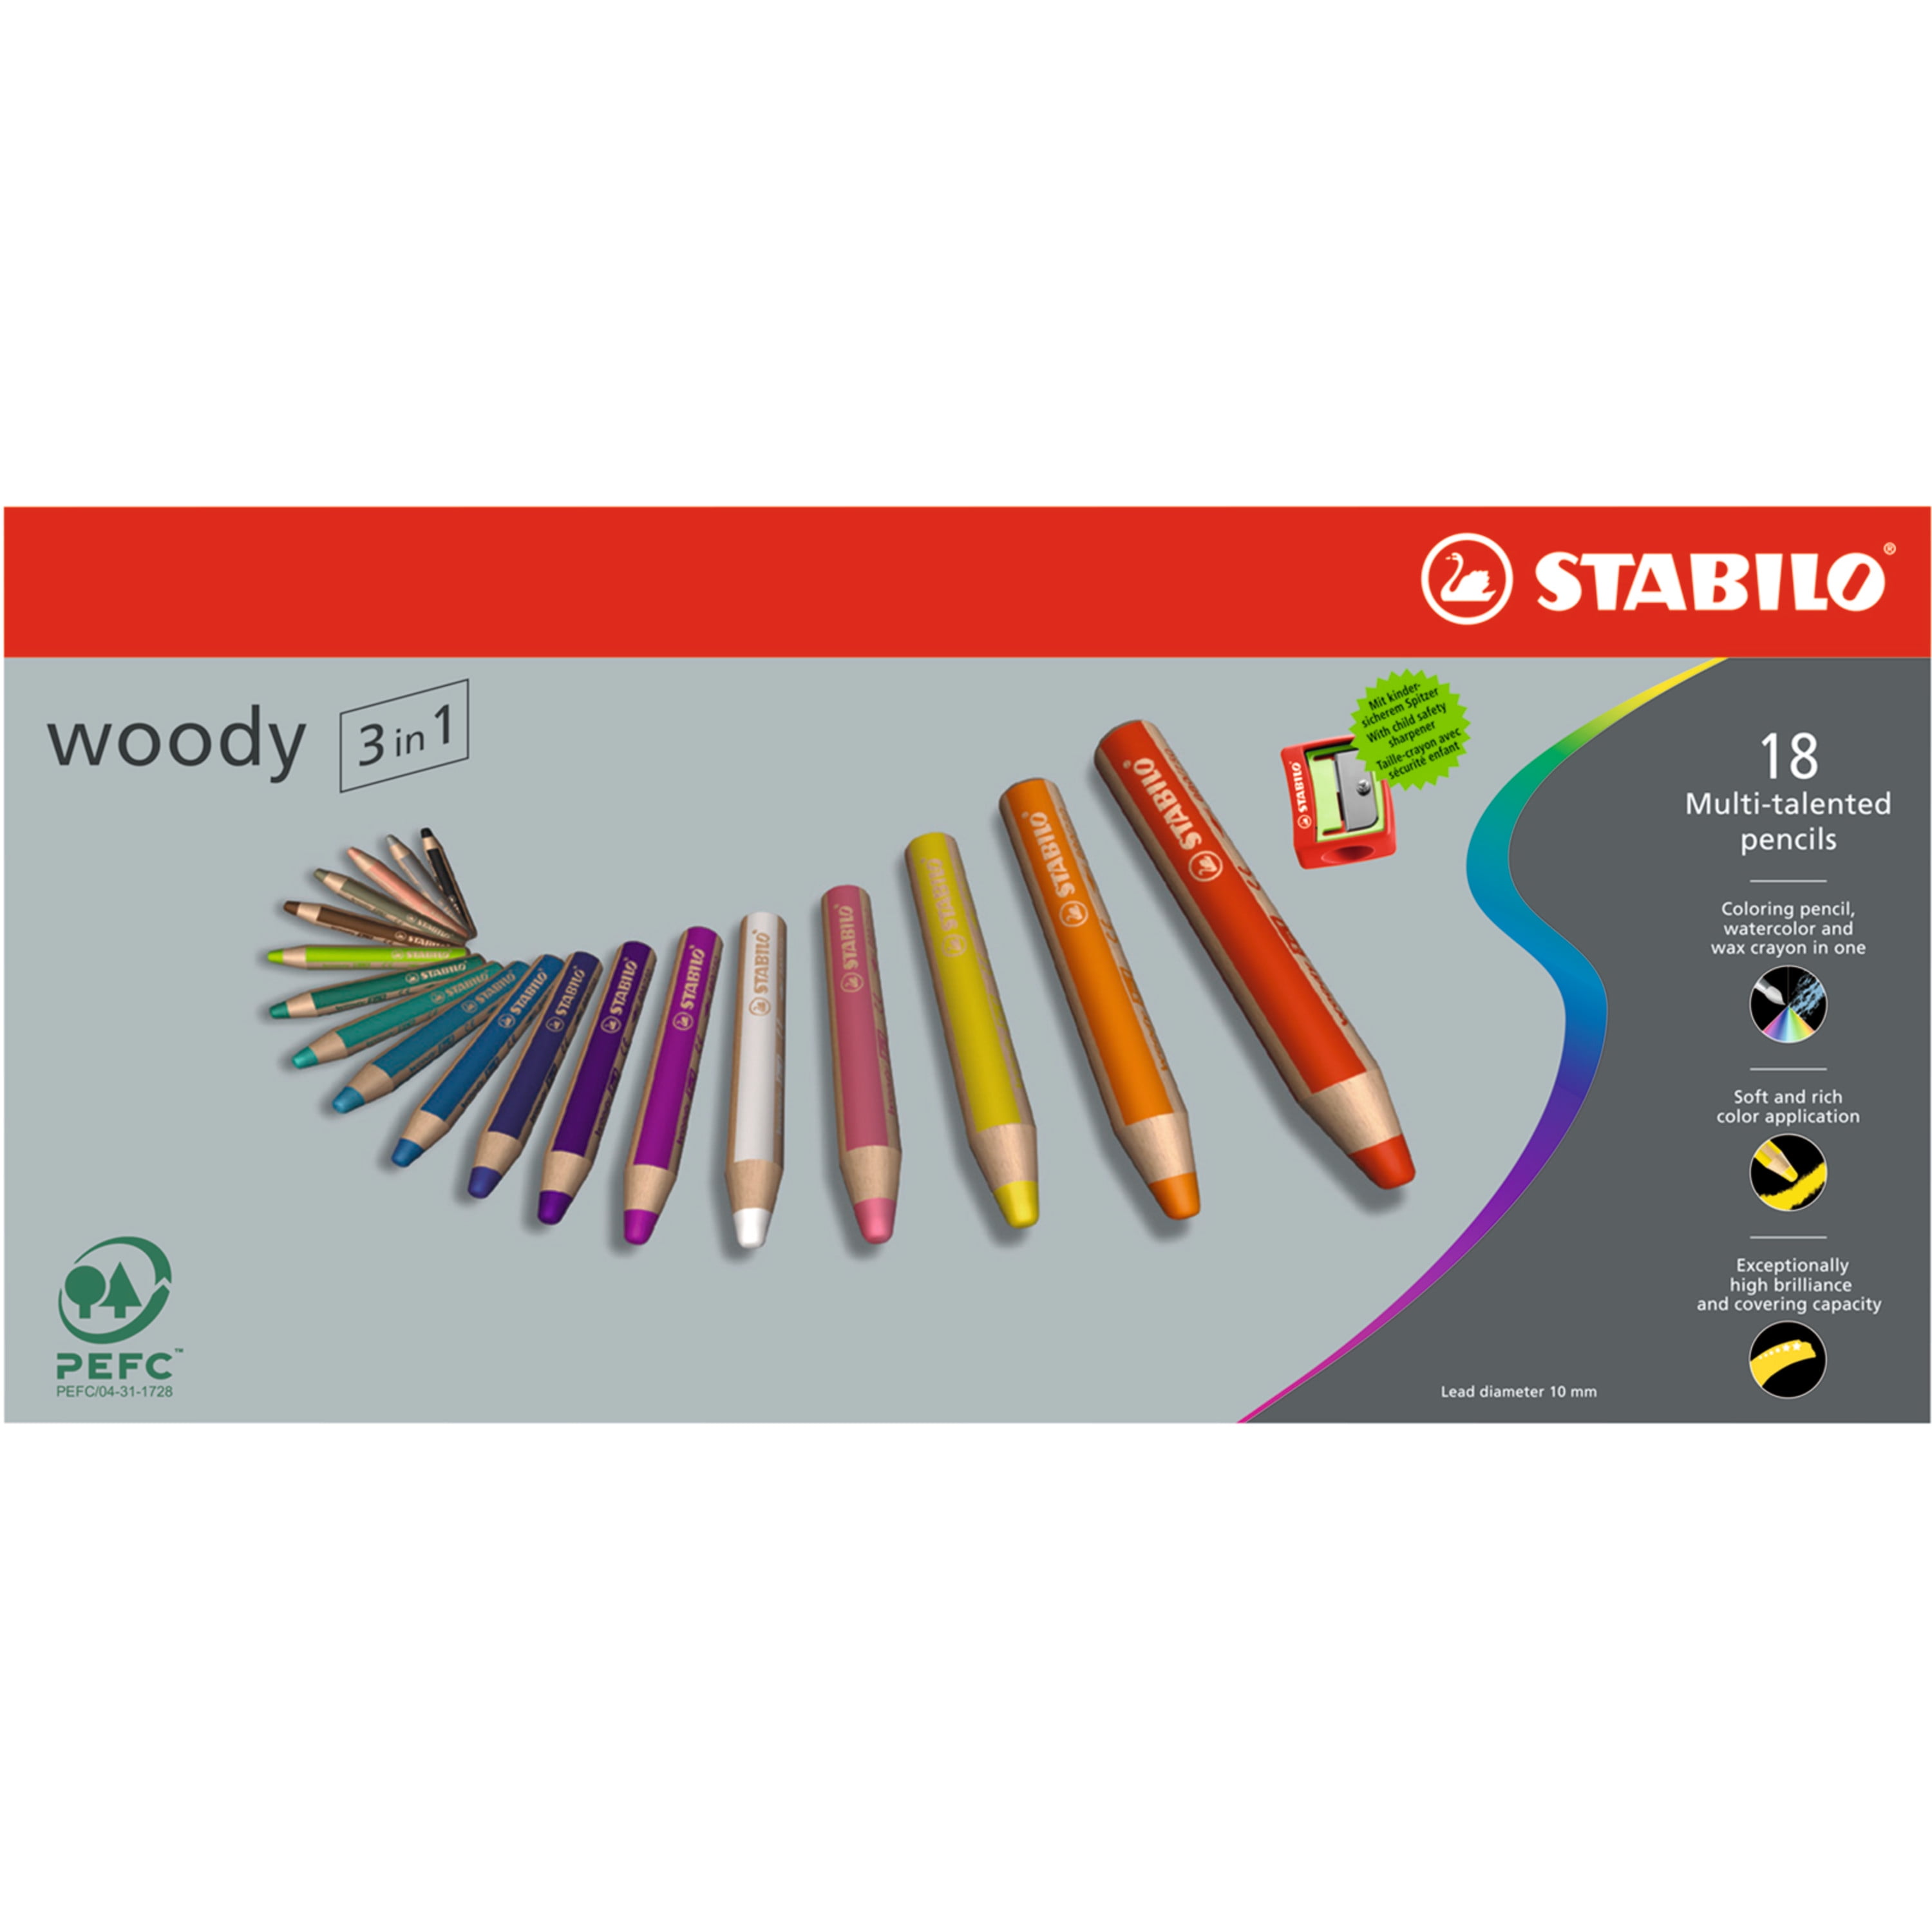 eb Verouderd Buigen STABILO Woody 3 in 1 Pencils, 18-Color Set - Walmart.com